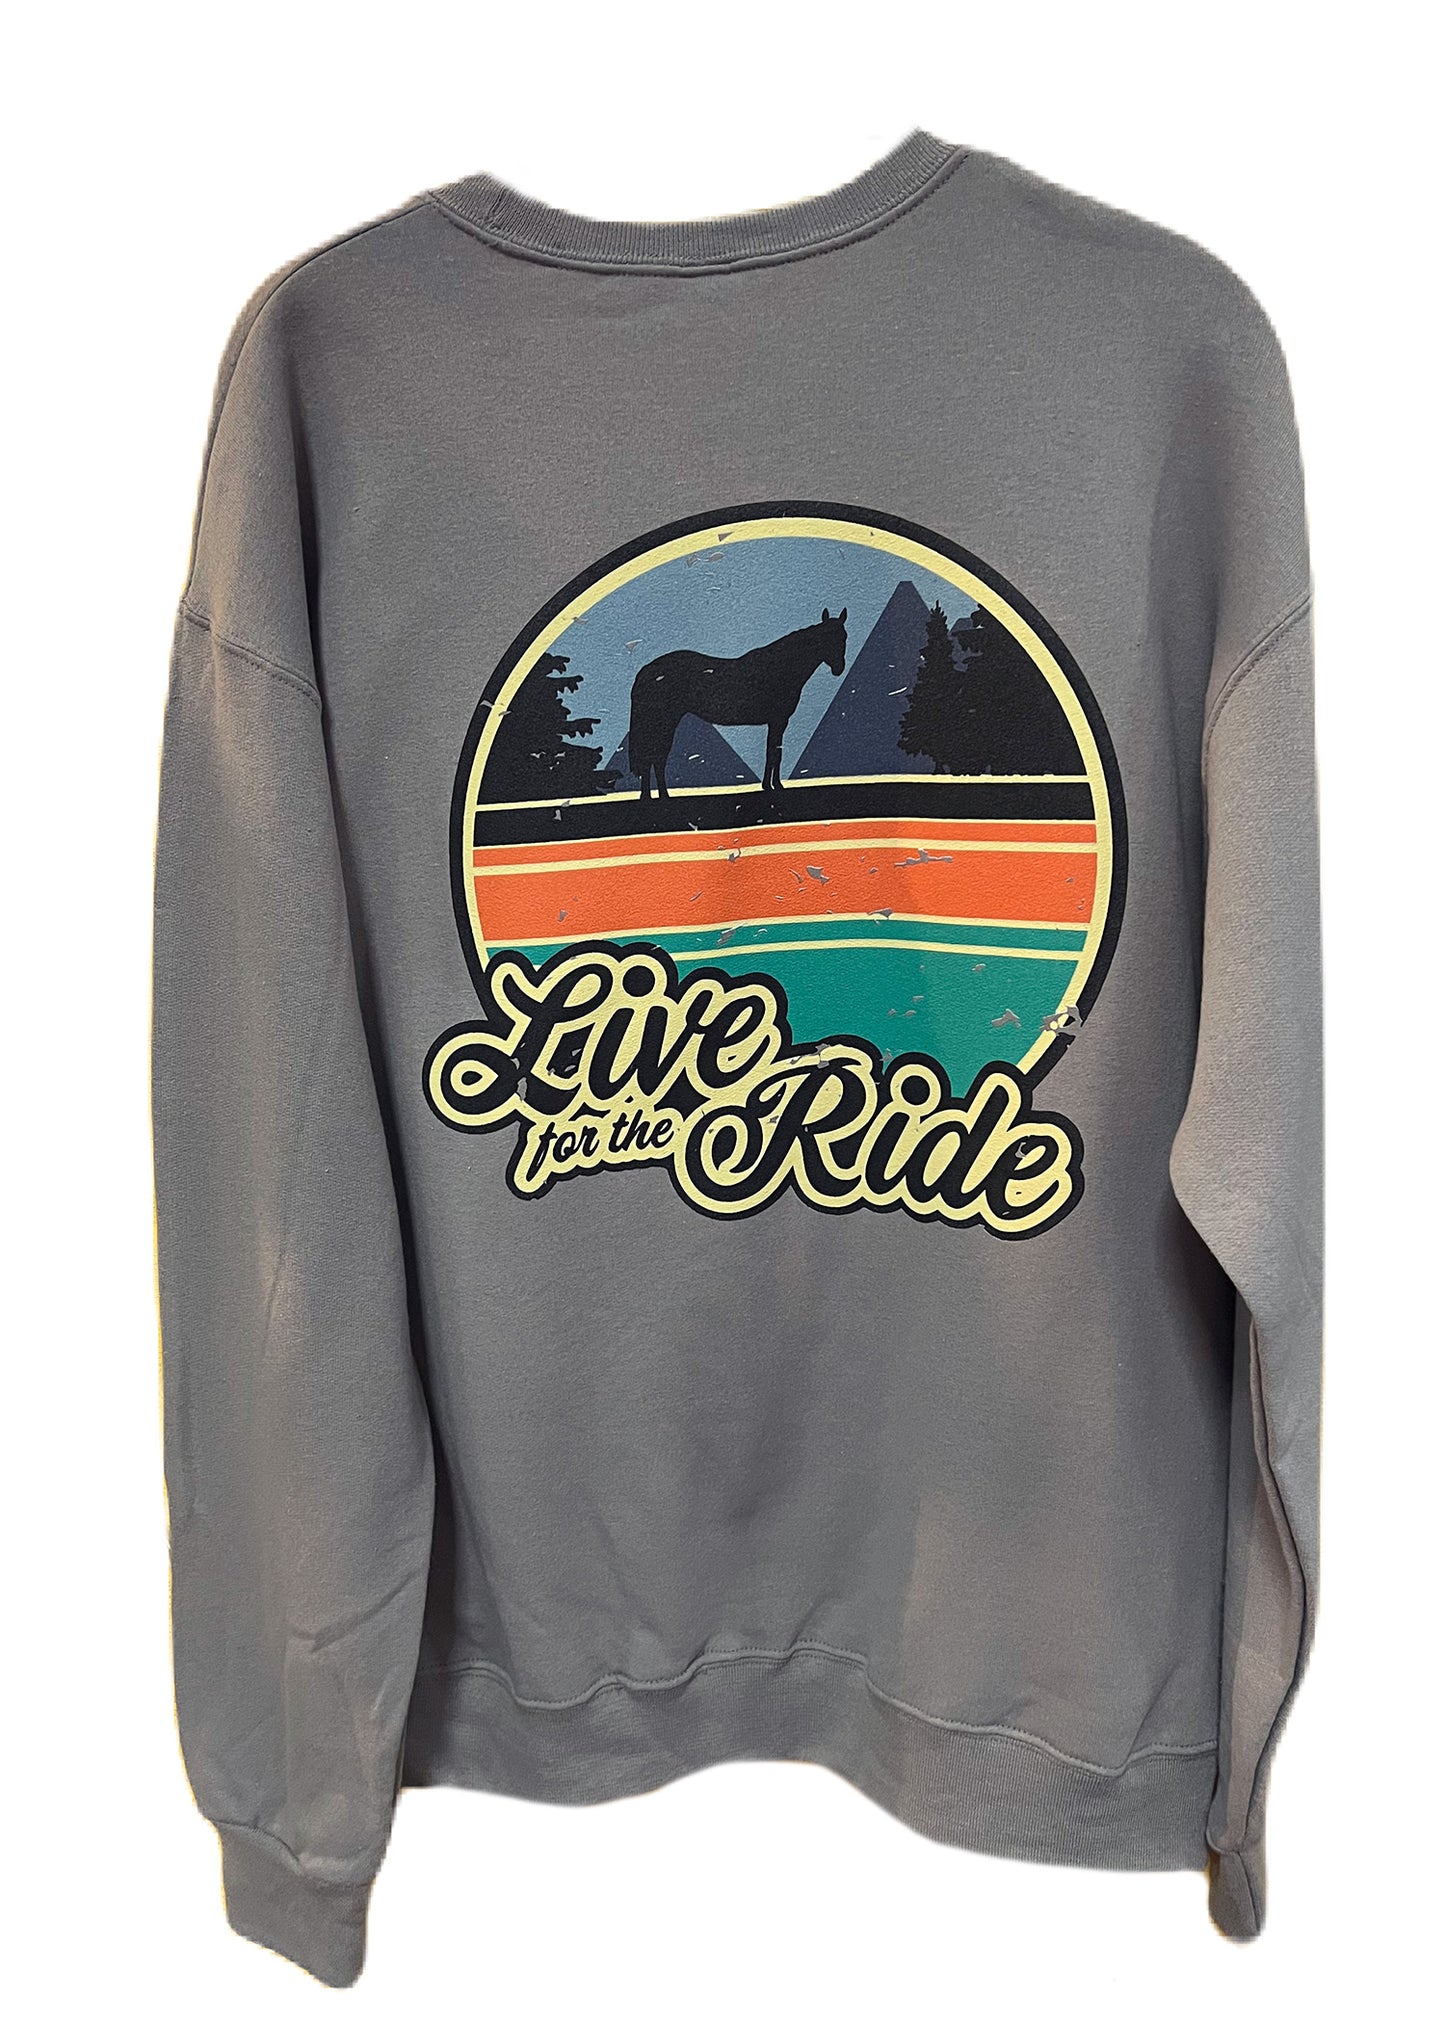 Vintage Sunset Crewneck Sweatshirt